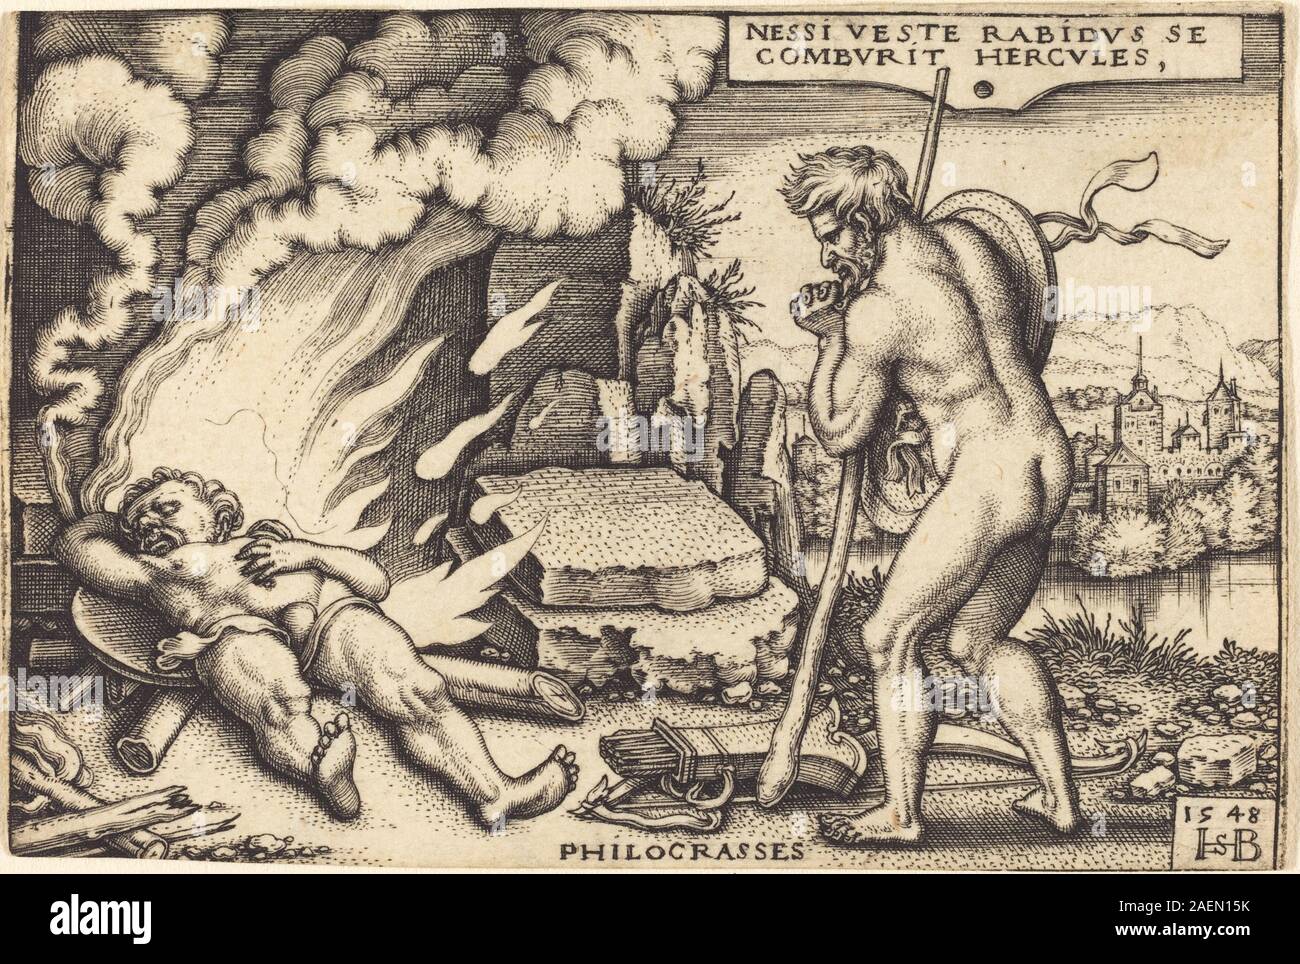 Sebald Beham, Death of Hercules, 1542-1548, Death of Hercules; 1542/1548 Stock Photo